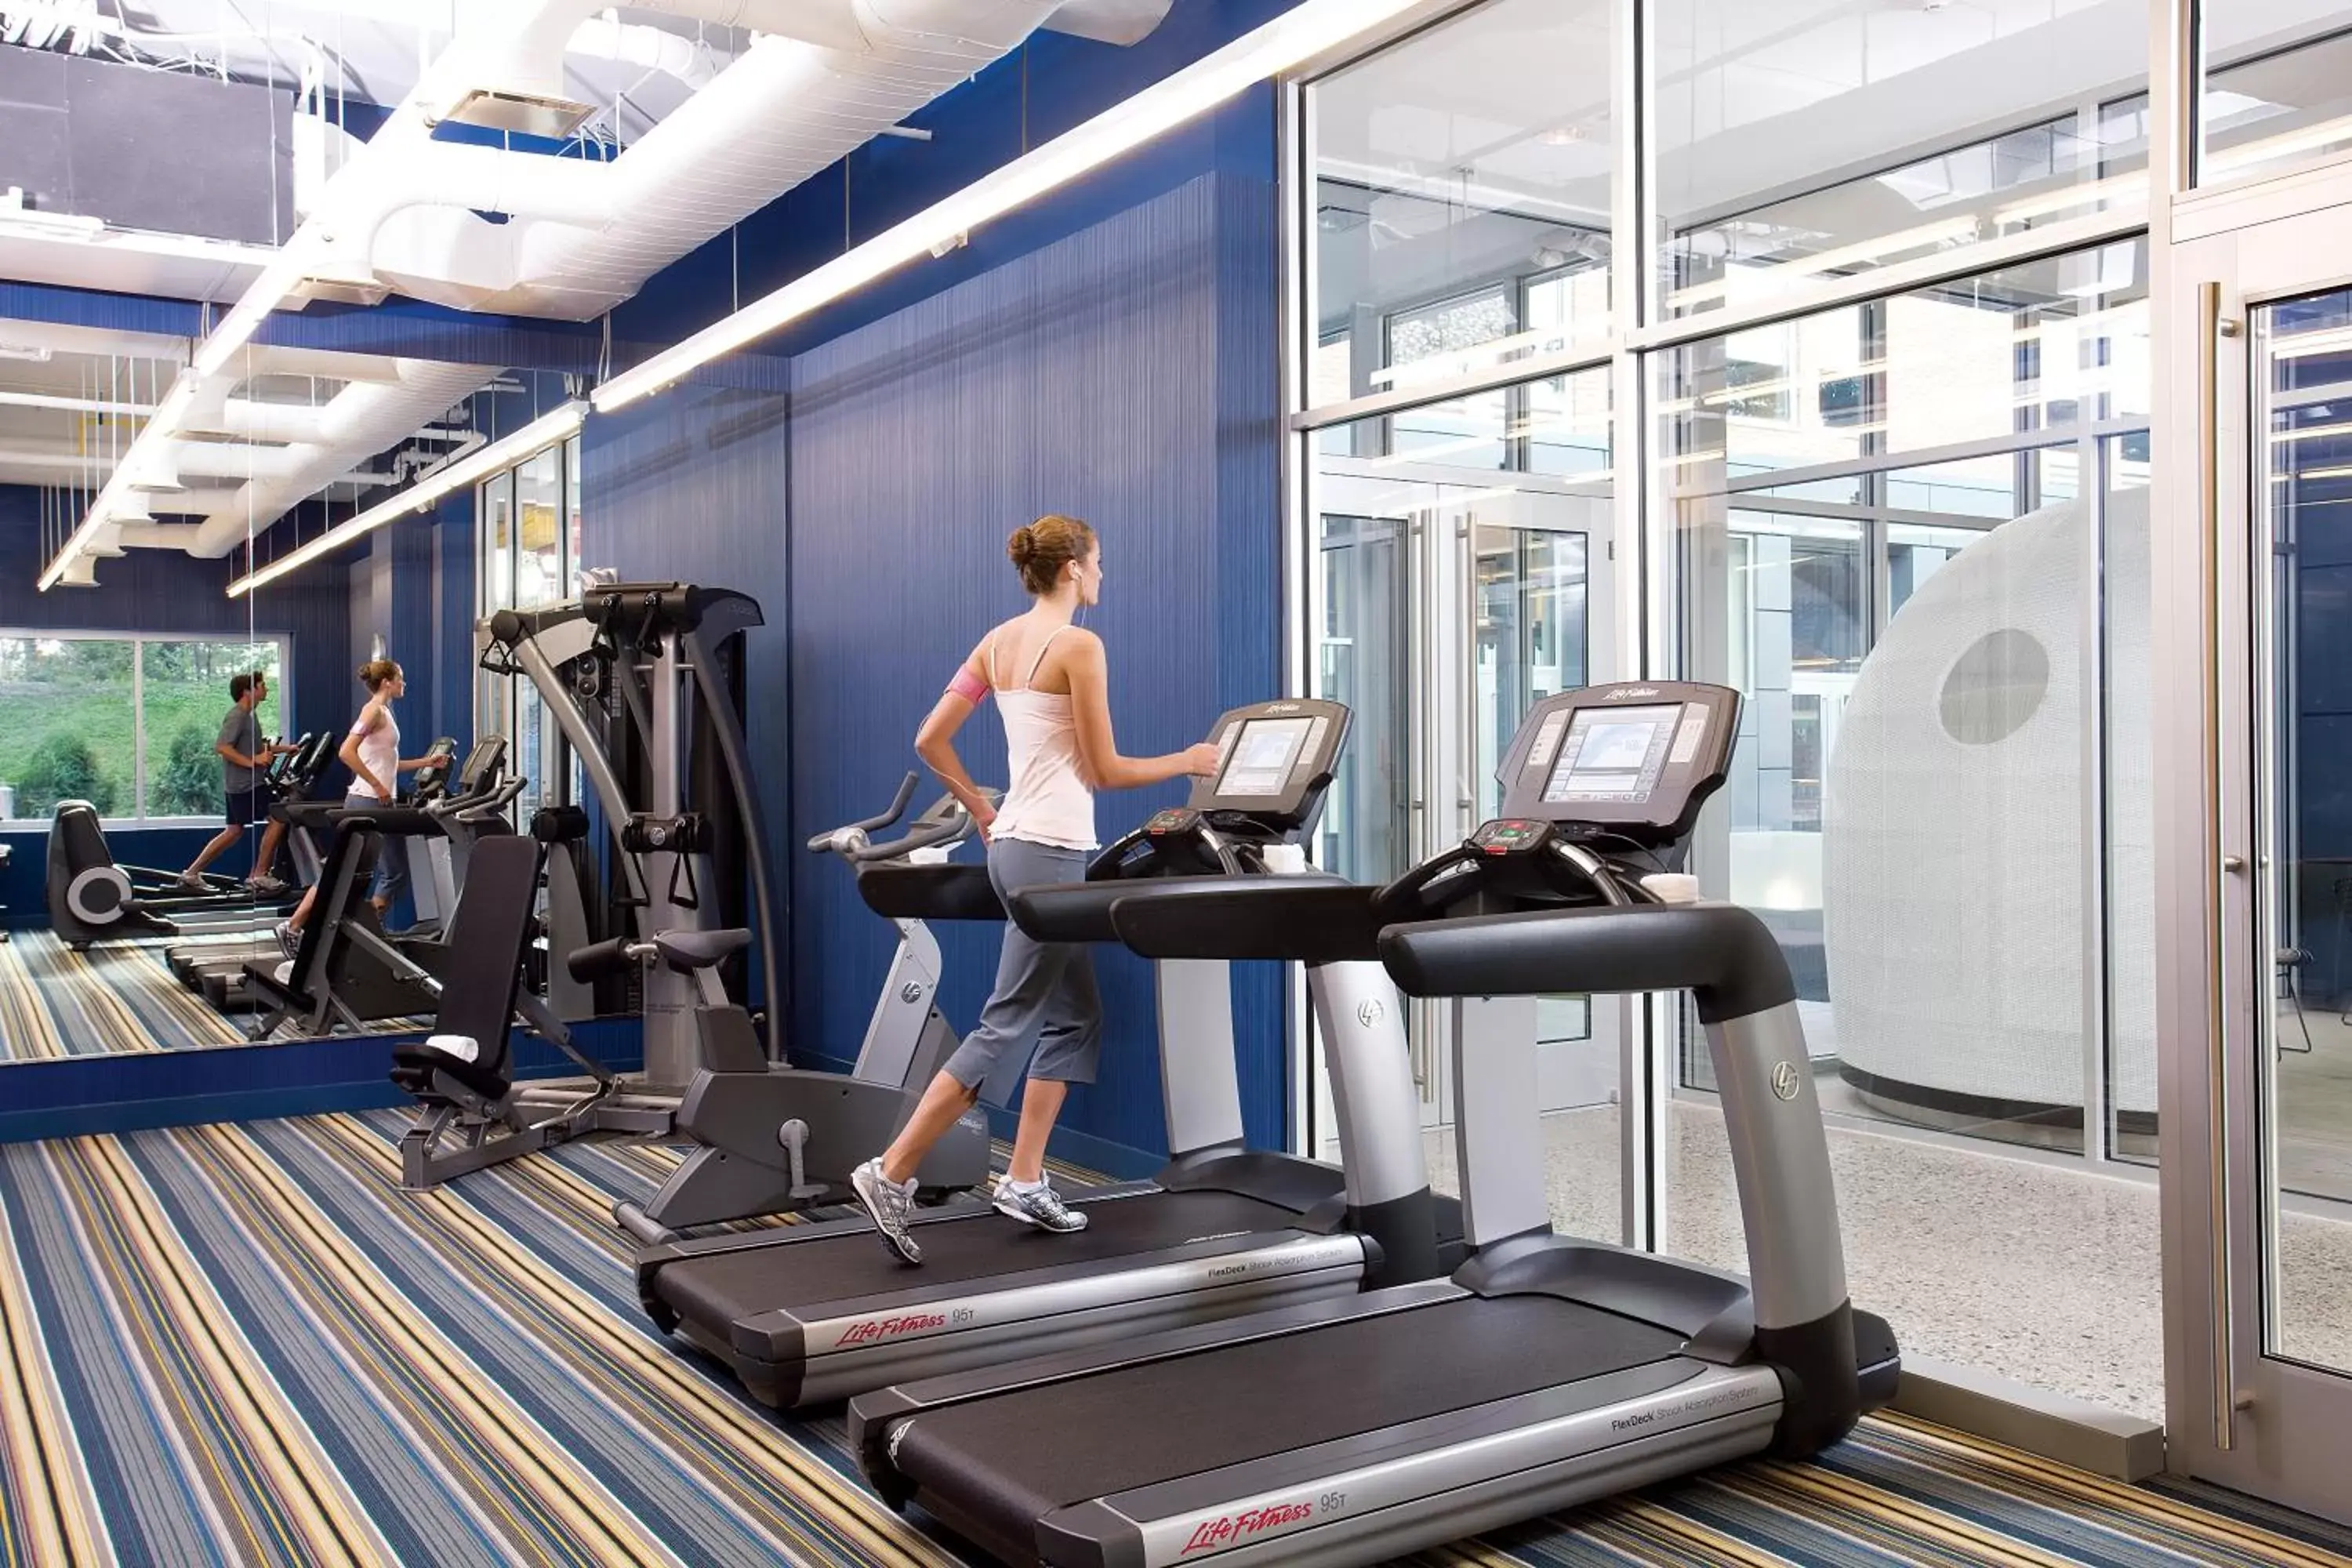 Fitness centre/facilities, Fitness Center/Facilities in Aloft Harlem